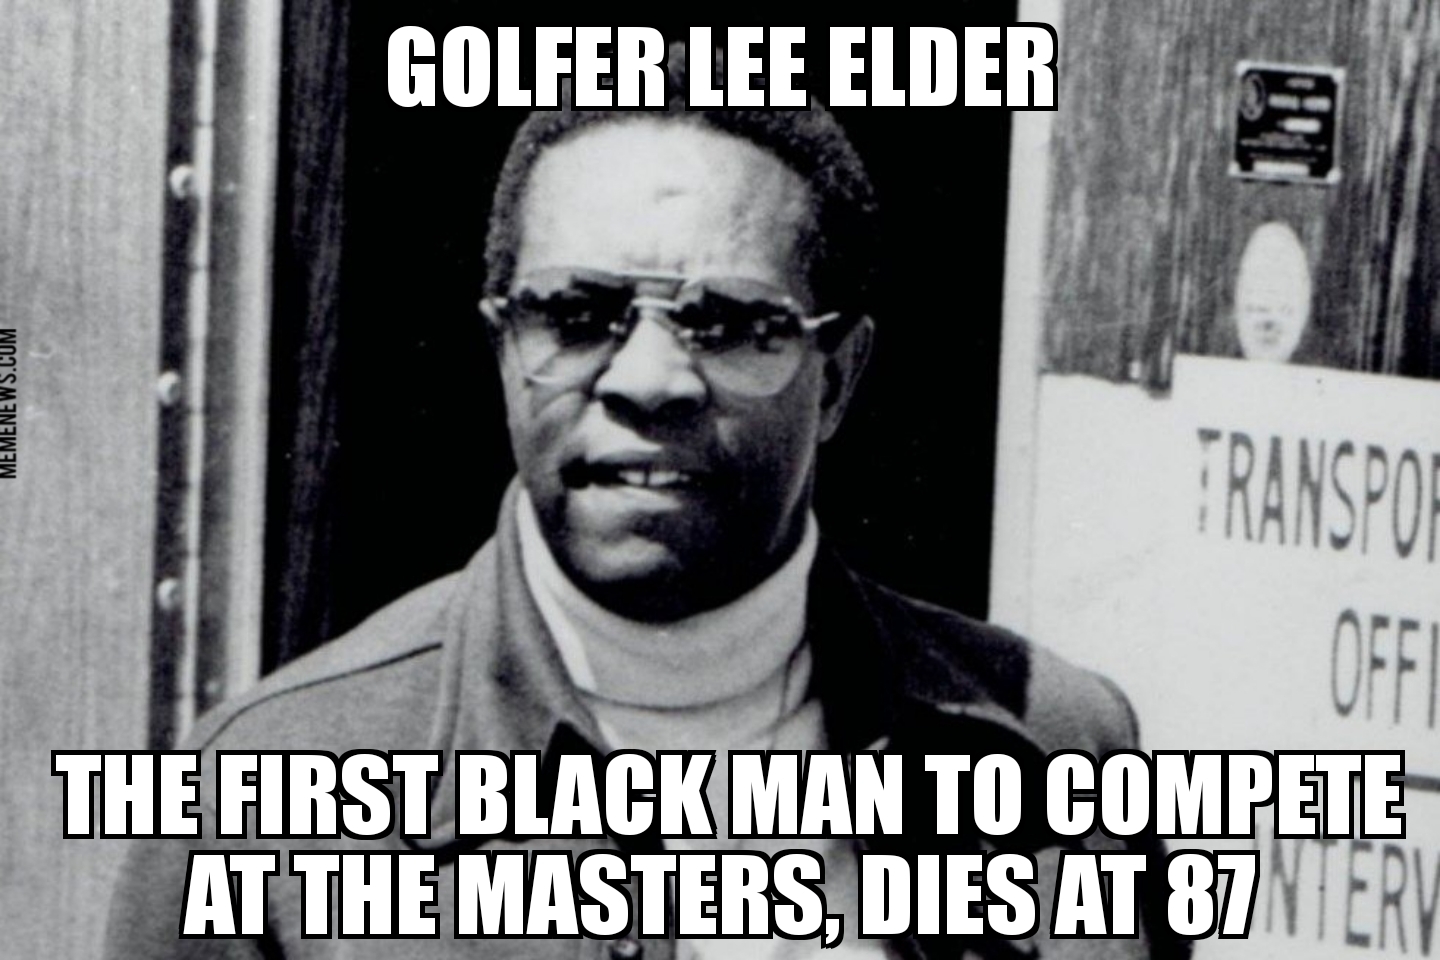 Lee Elder dies